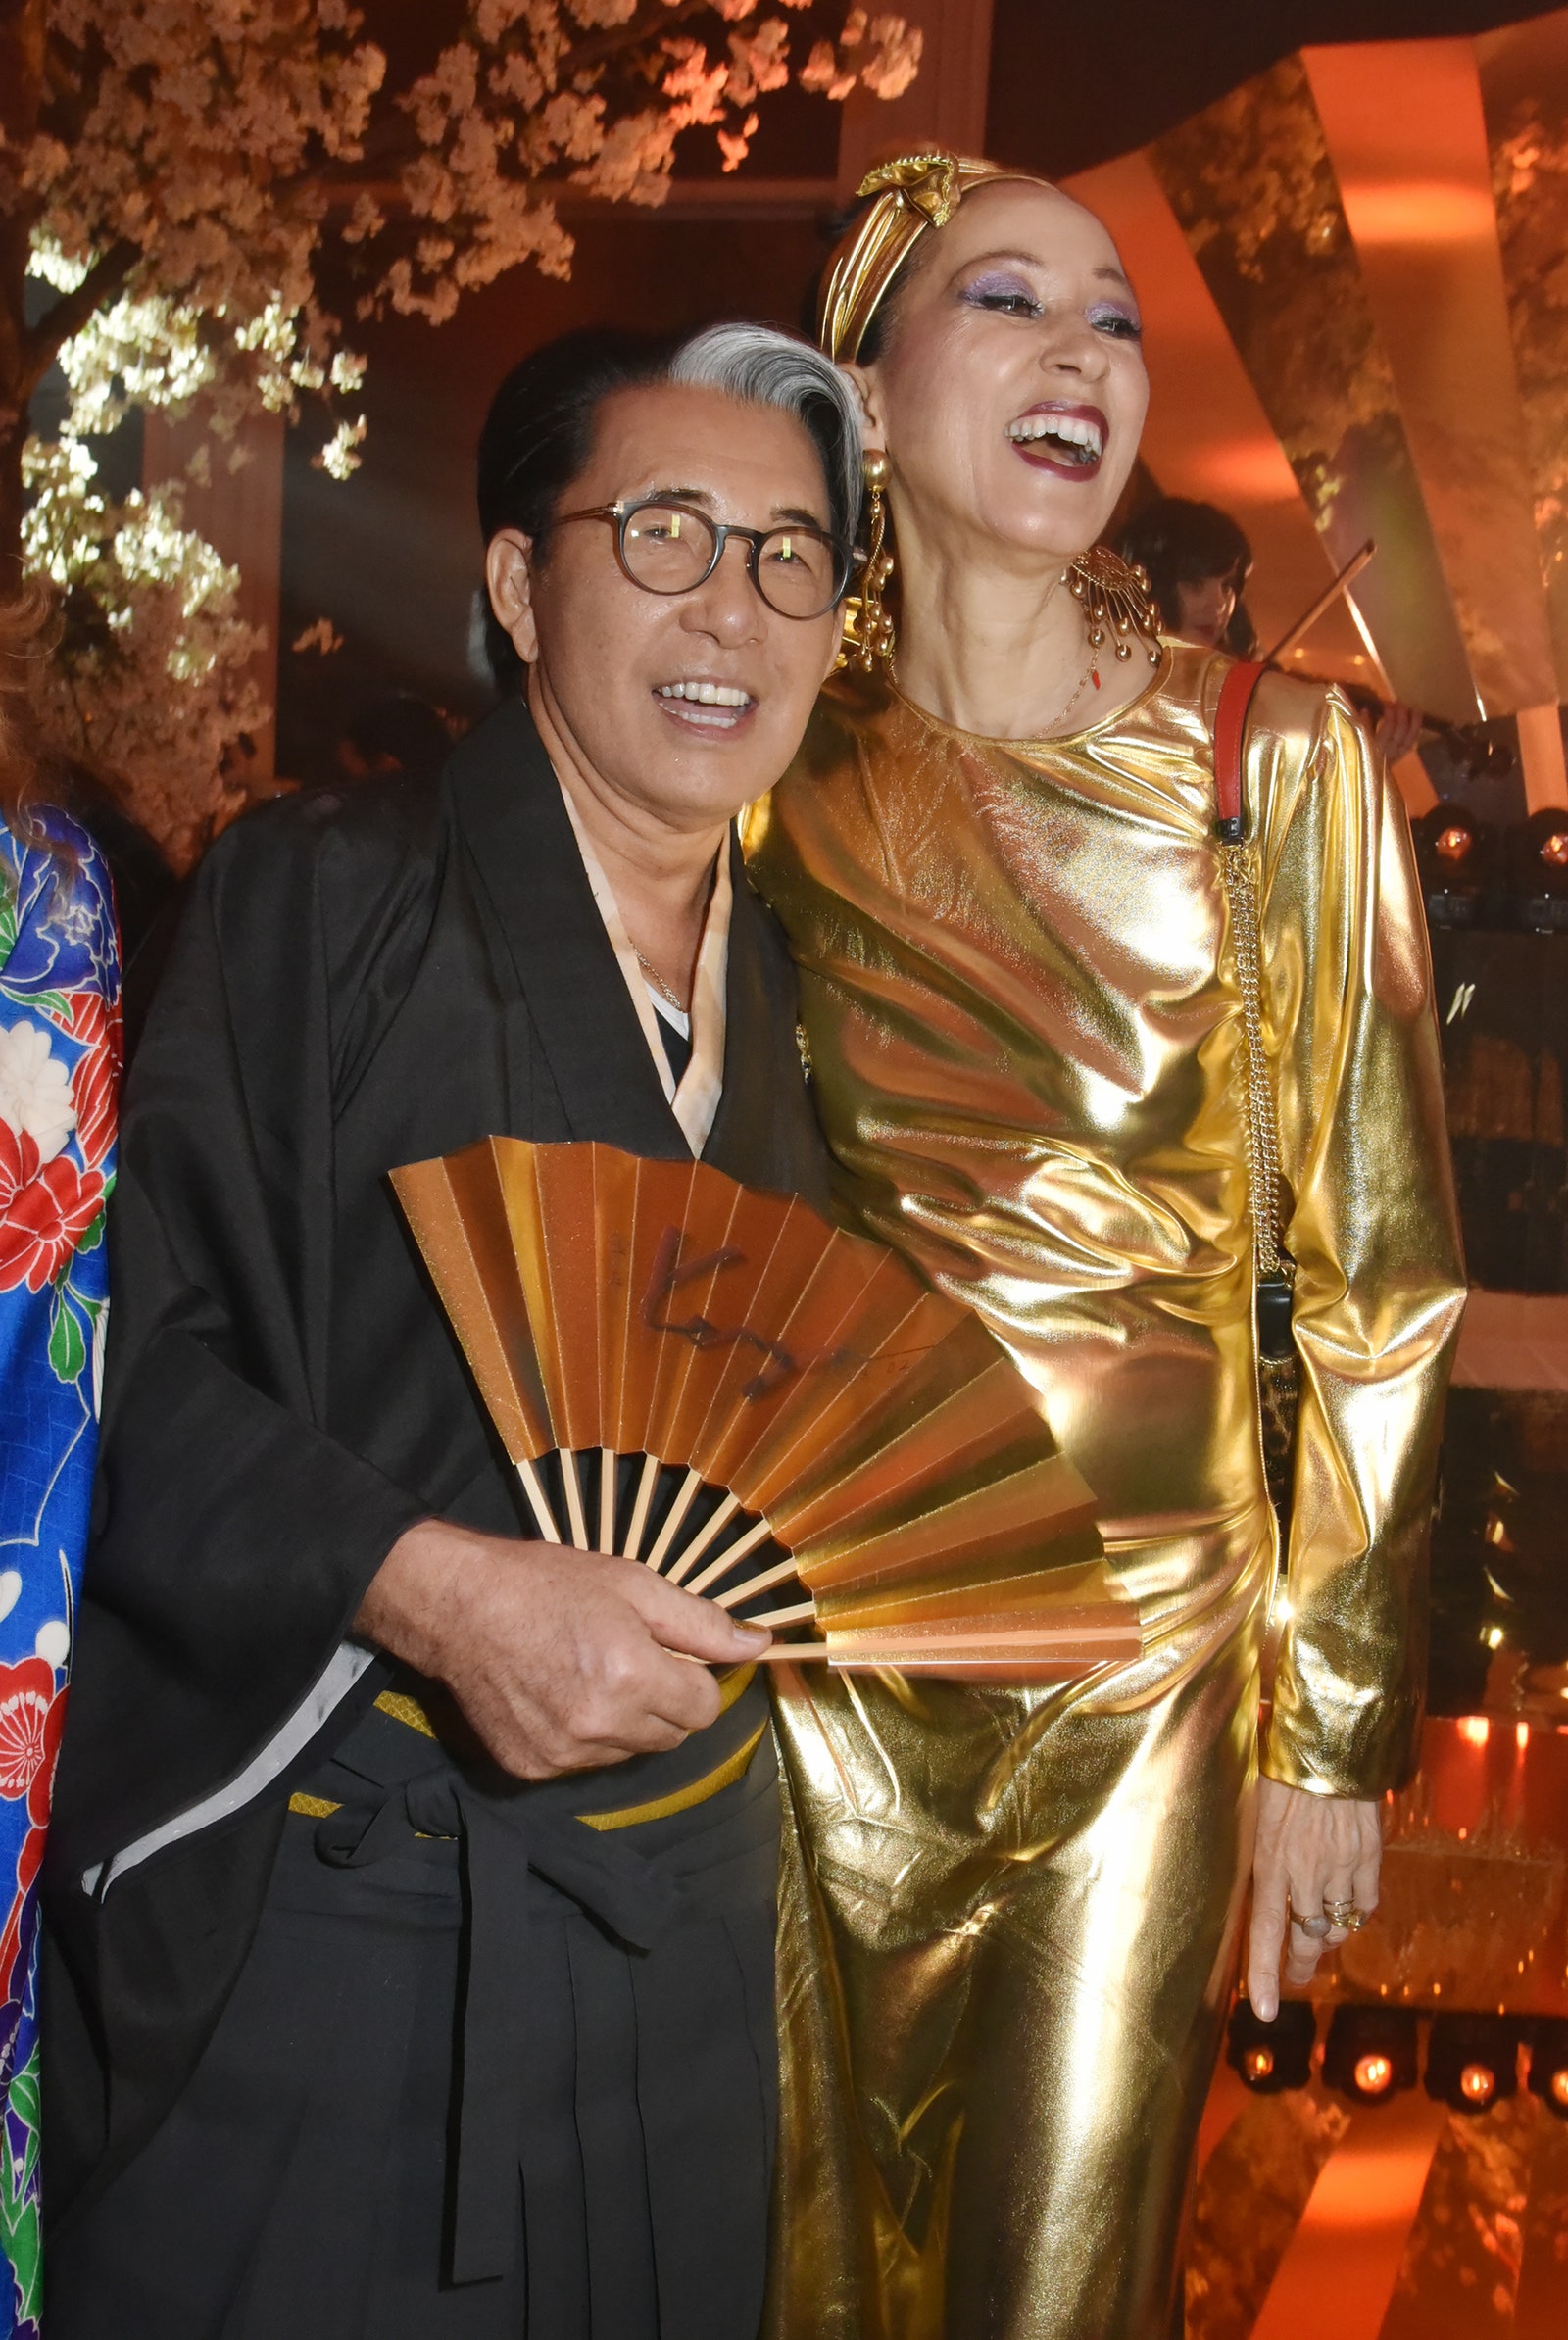 Пэт Кливленд на вечеринке в честь дня рождения Кензо Такада вместе с именинником